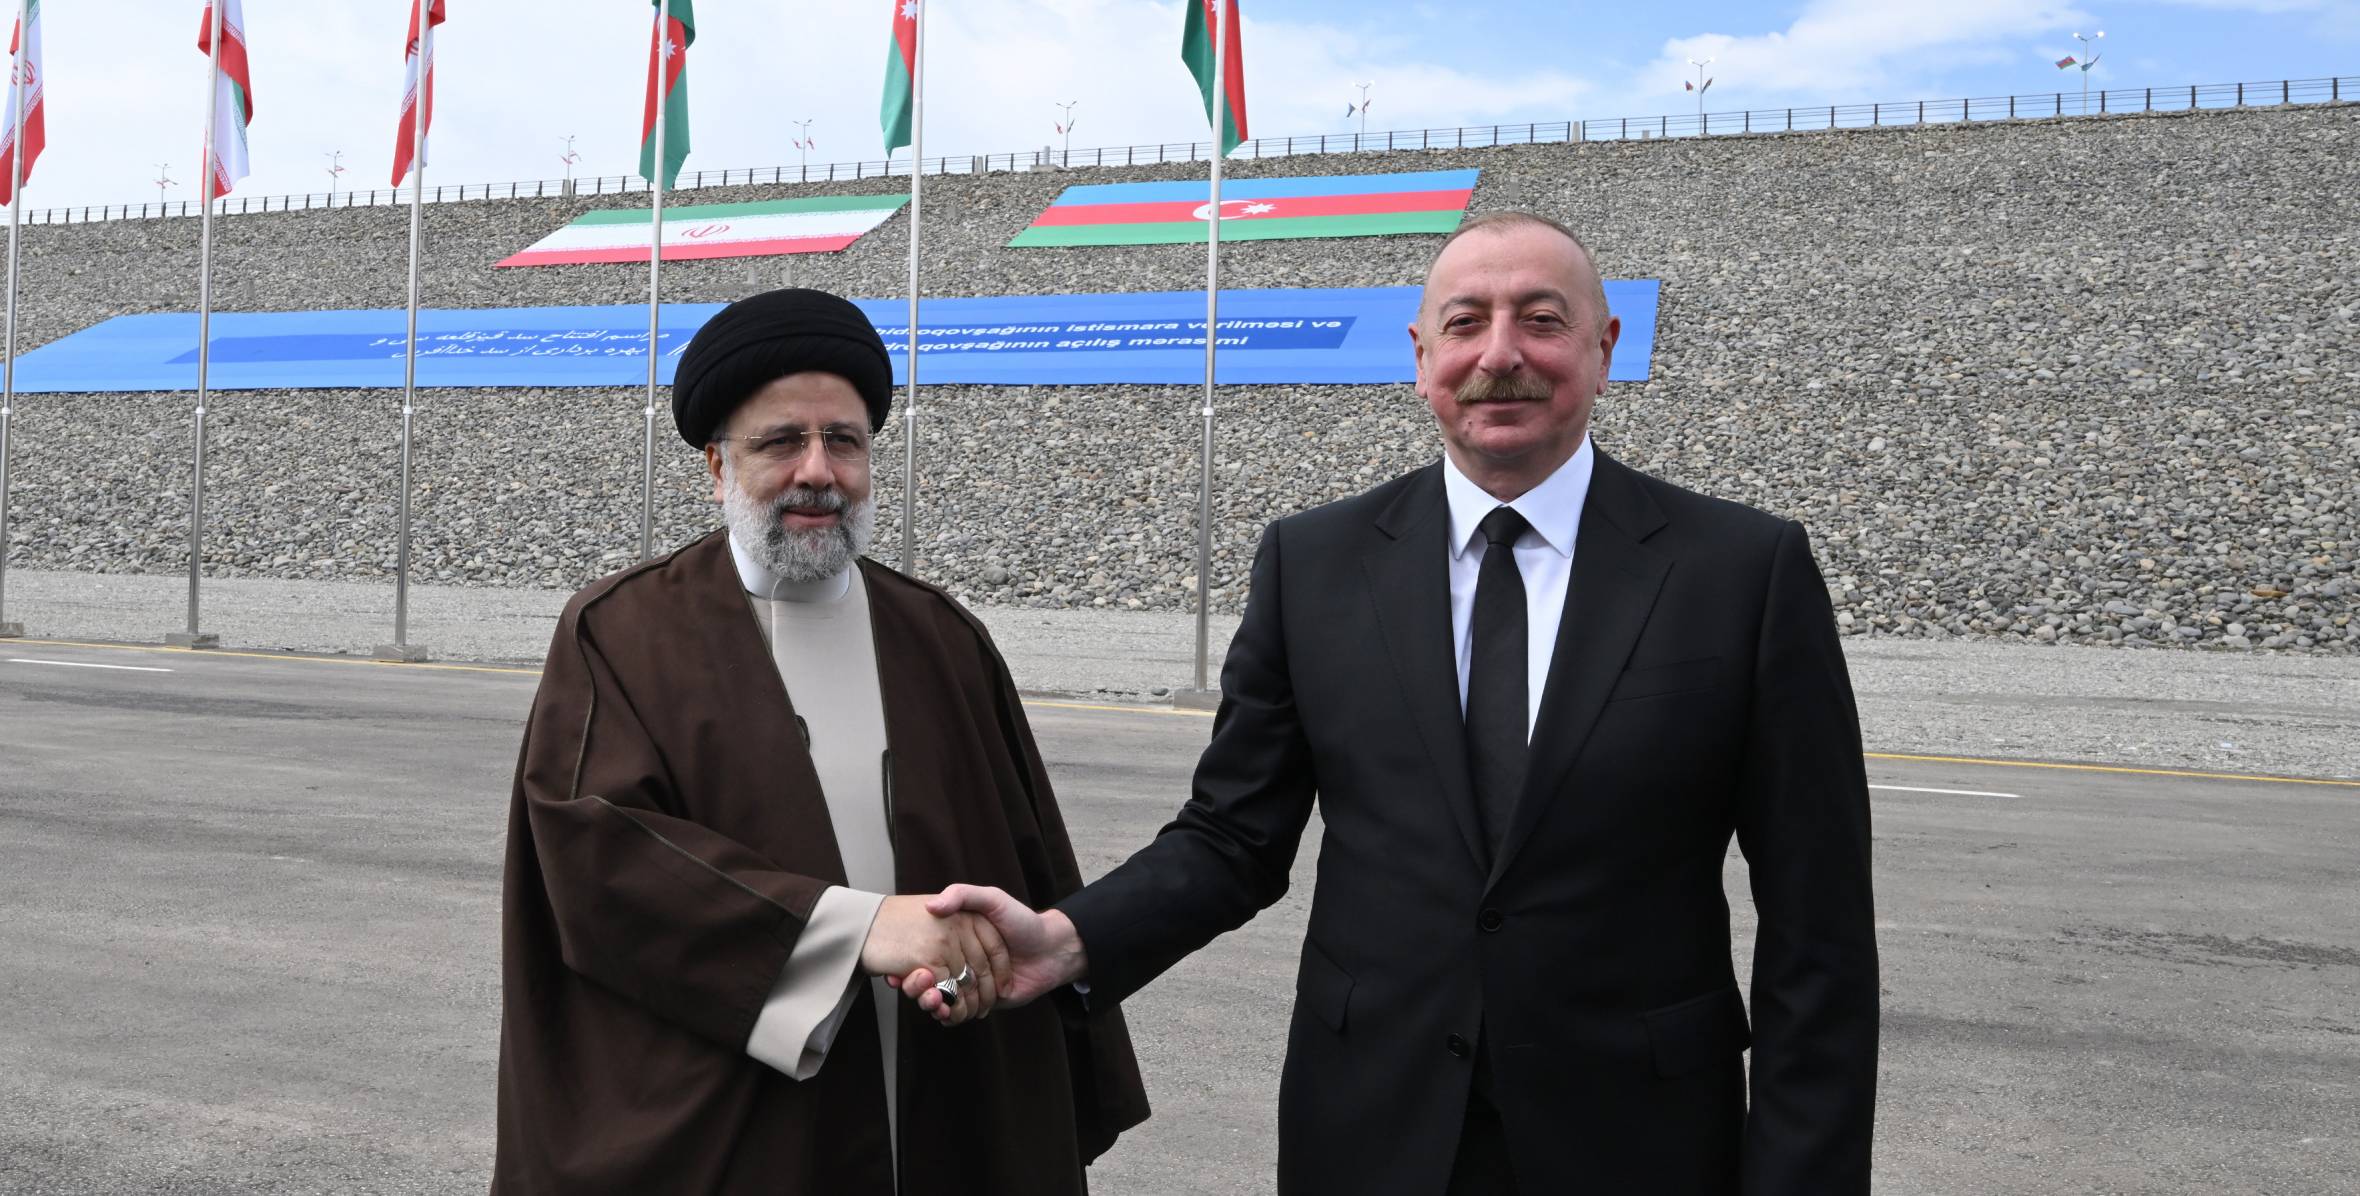 Состоялась встреча президентов Азербайджана и Ирана с участием делегаций